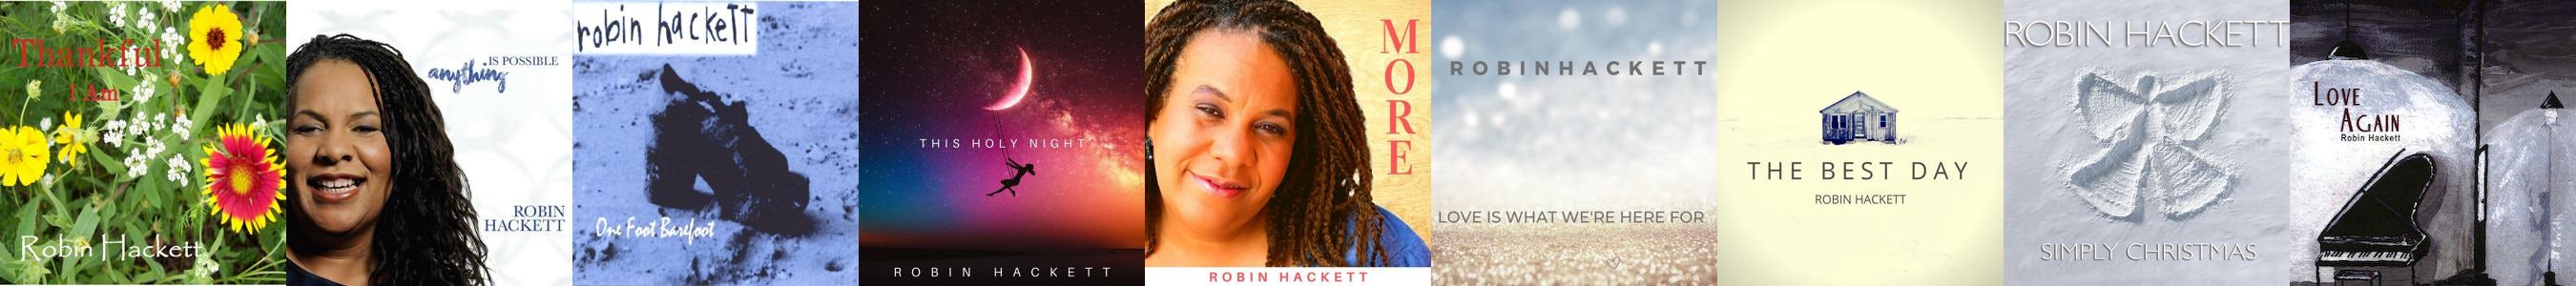 Robin Hackett LOVE AGAIN CD